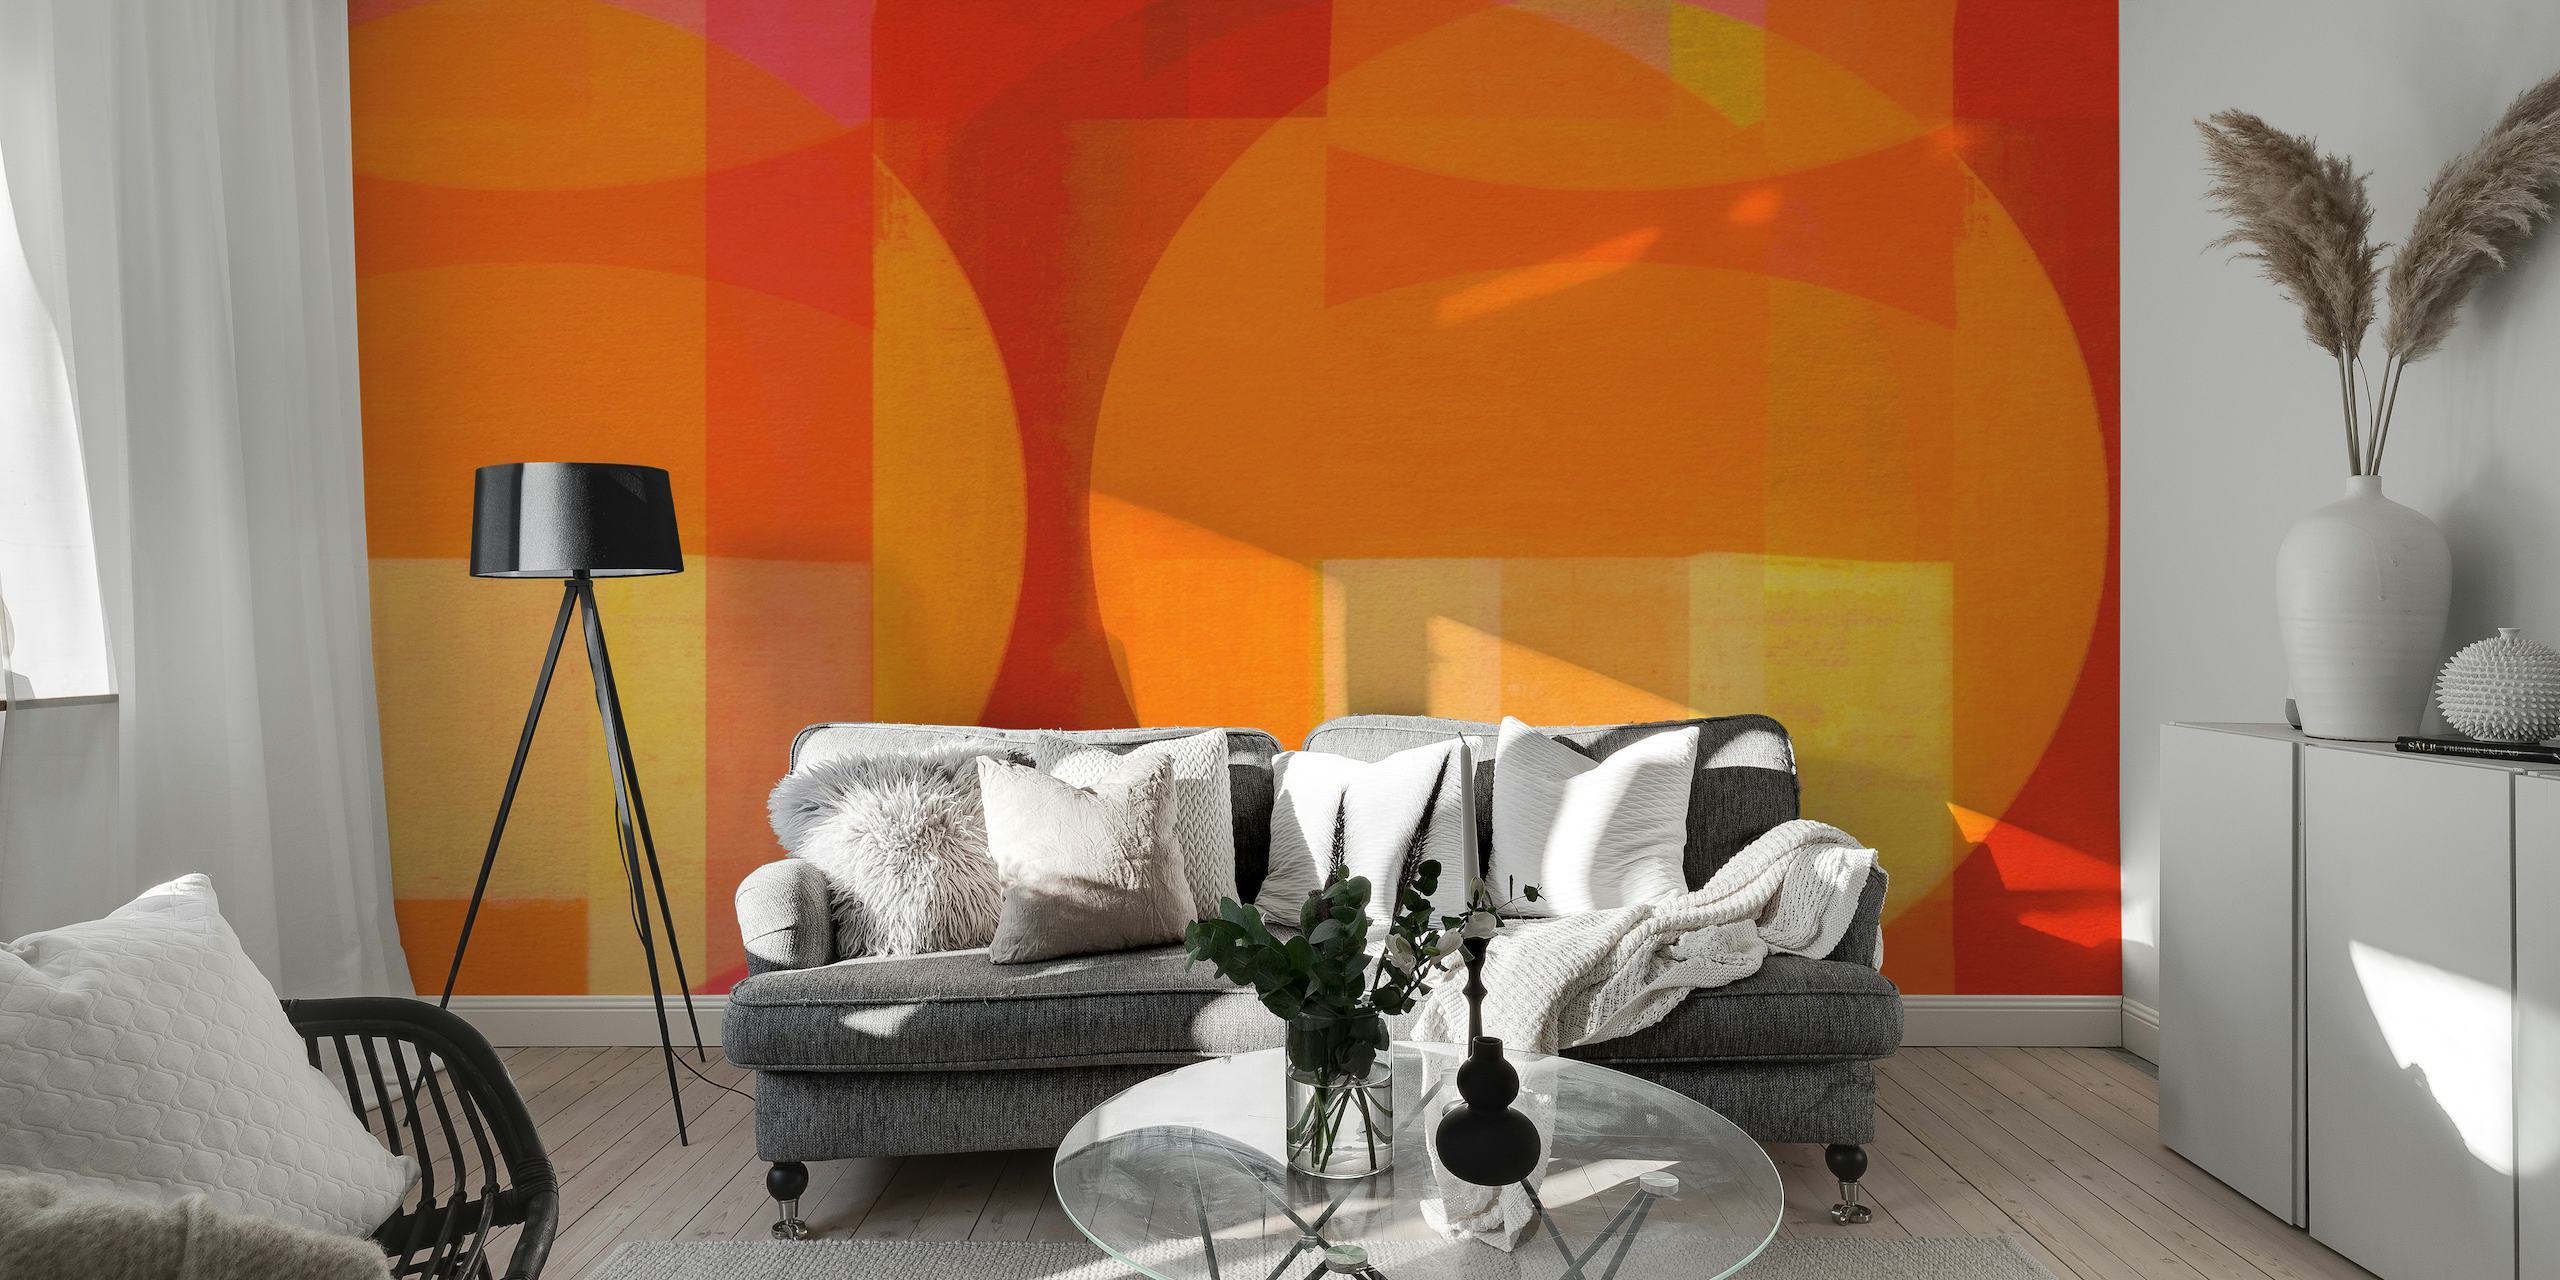 Abstrakti Bauhaus-tyylinen seinämaalaus punaisten, oranssien ja keltaisten geometristen muotojen elävässä sekoituksessa.